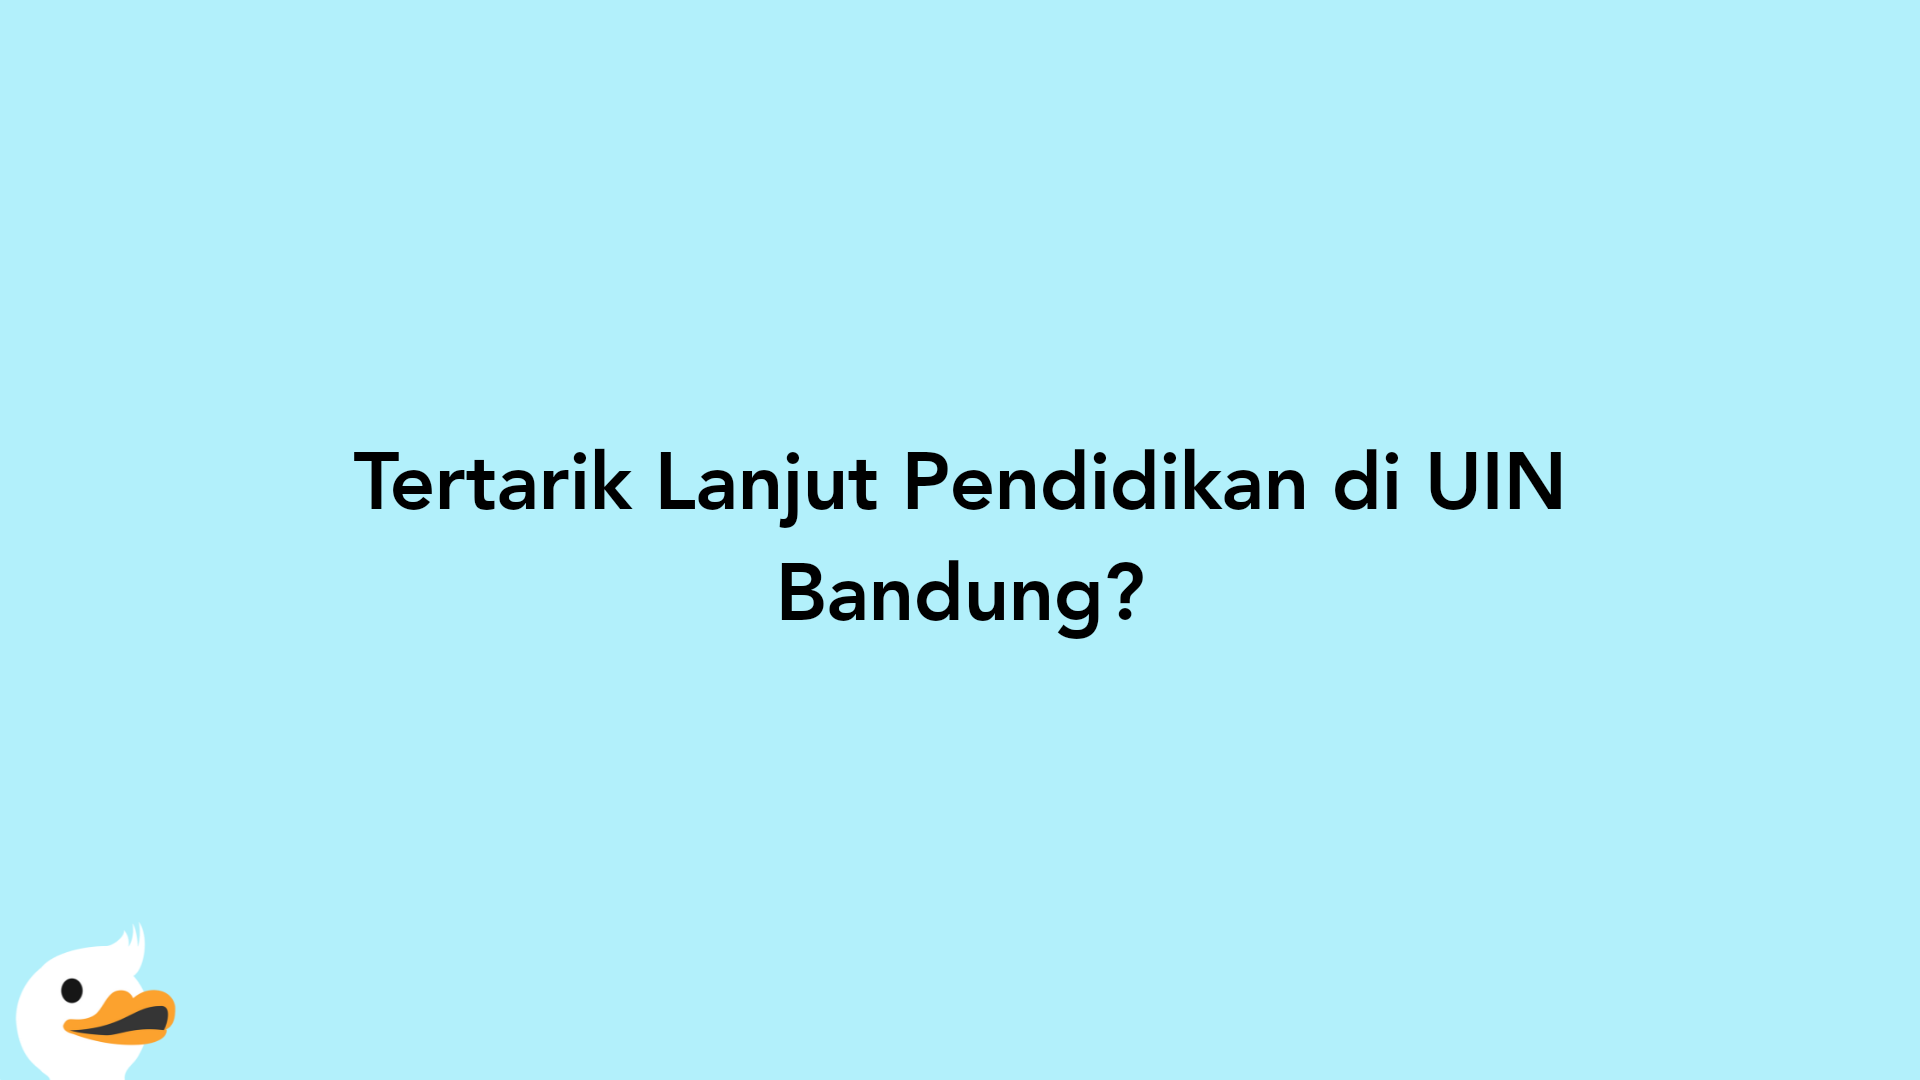 Tertarik Lanjut Pendidikan di UIN Bandung?